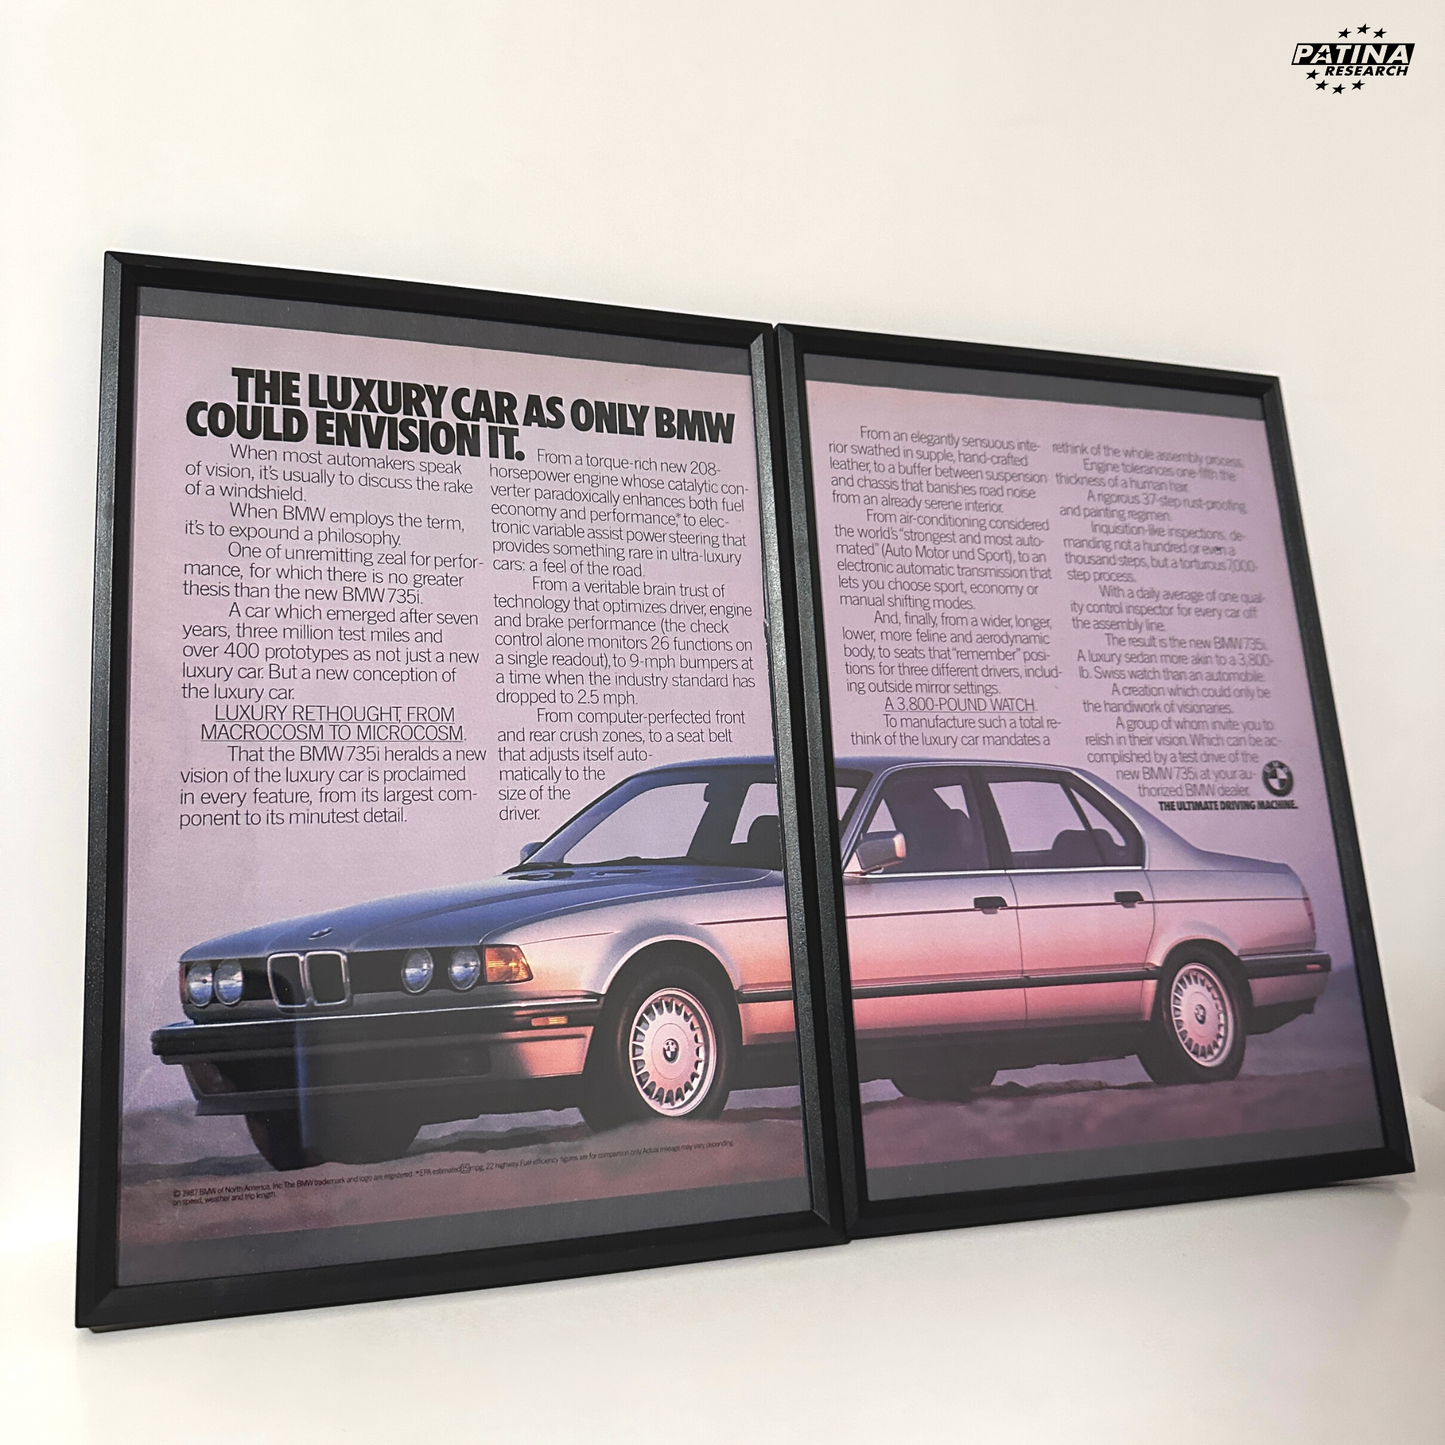 Bmw e32 Luxury car framed ad